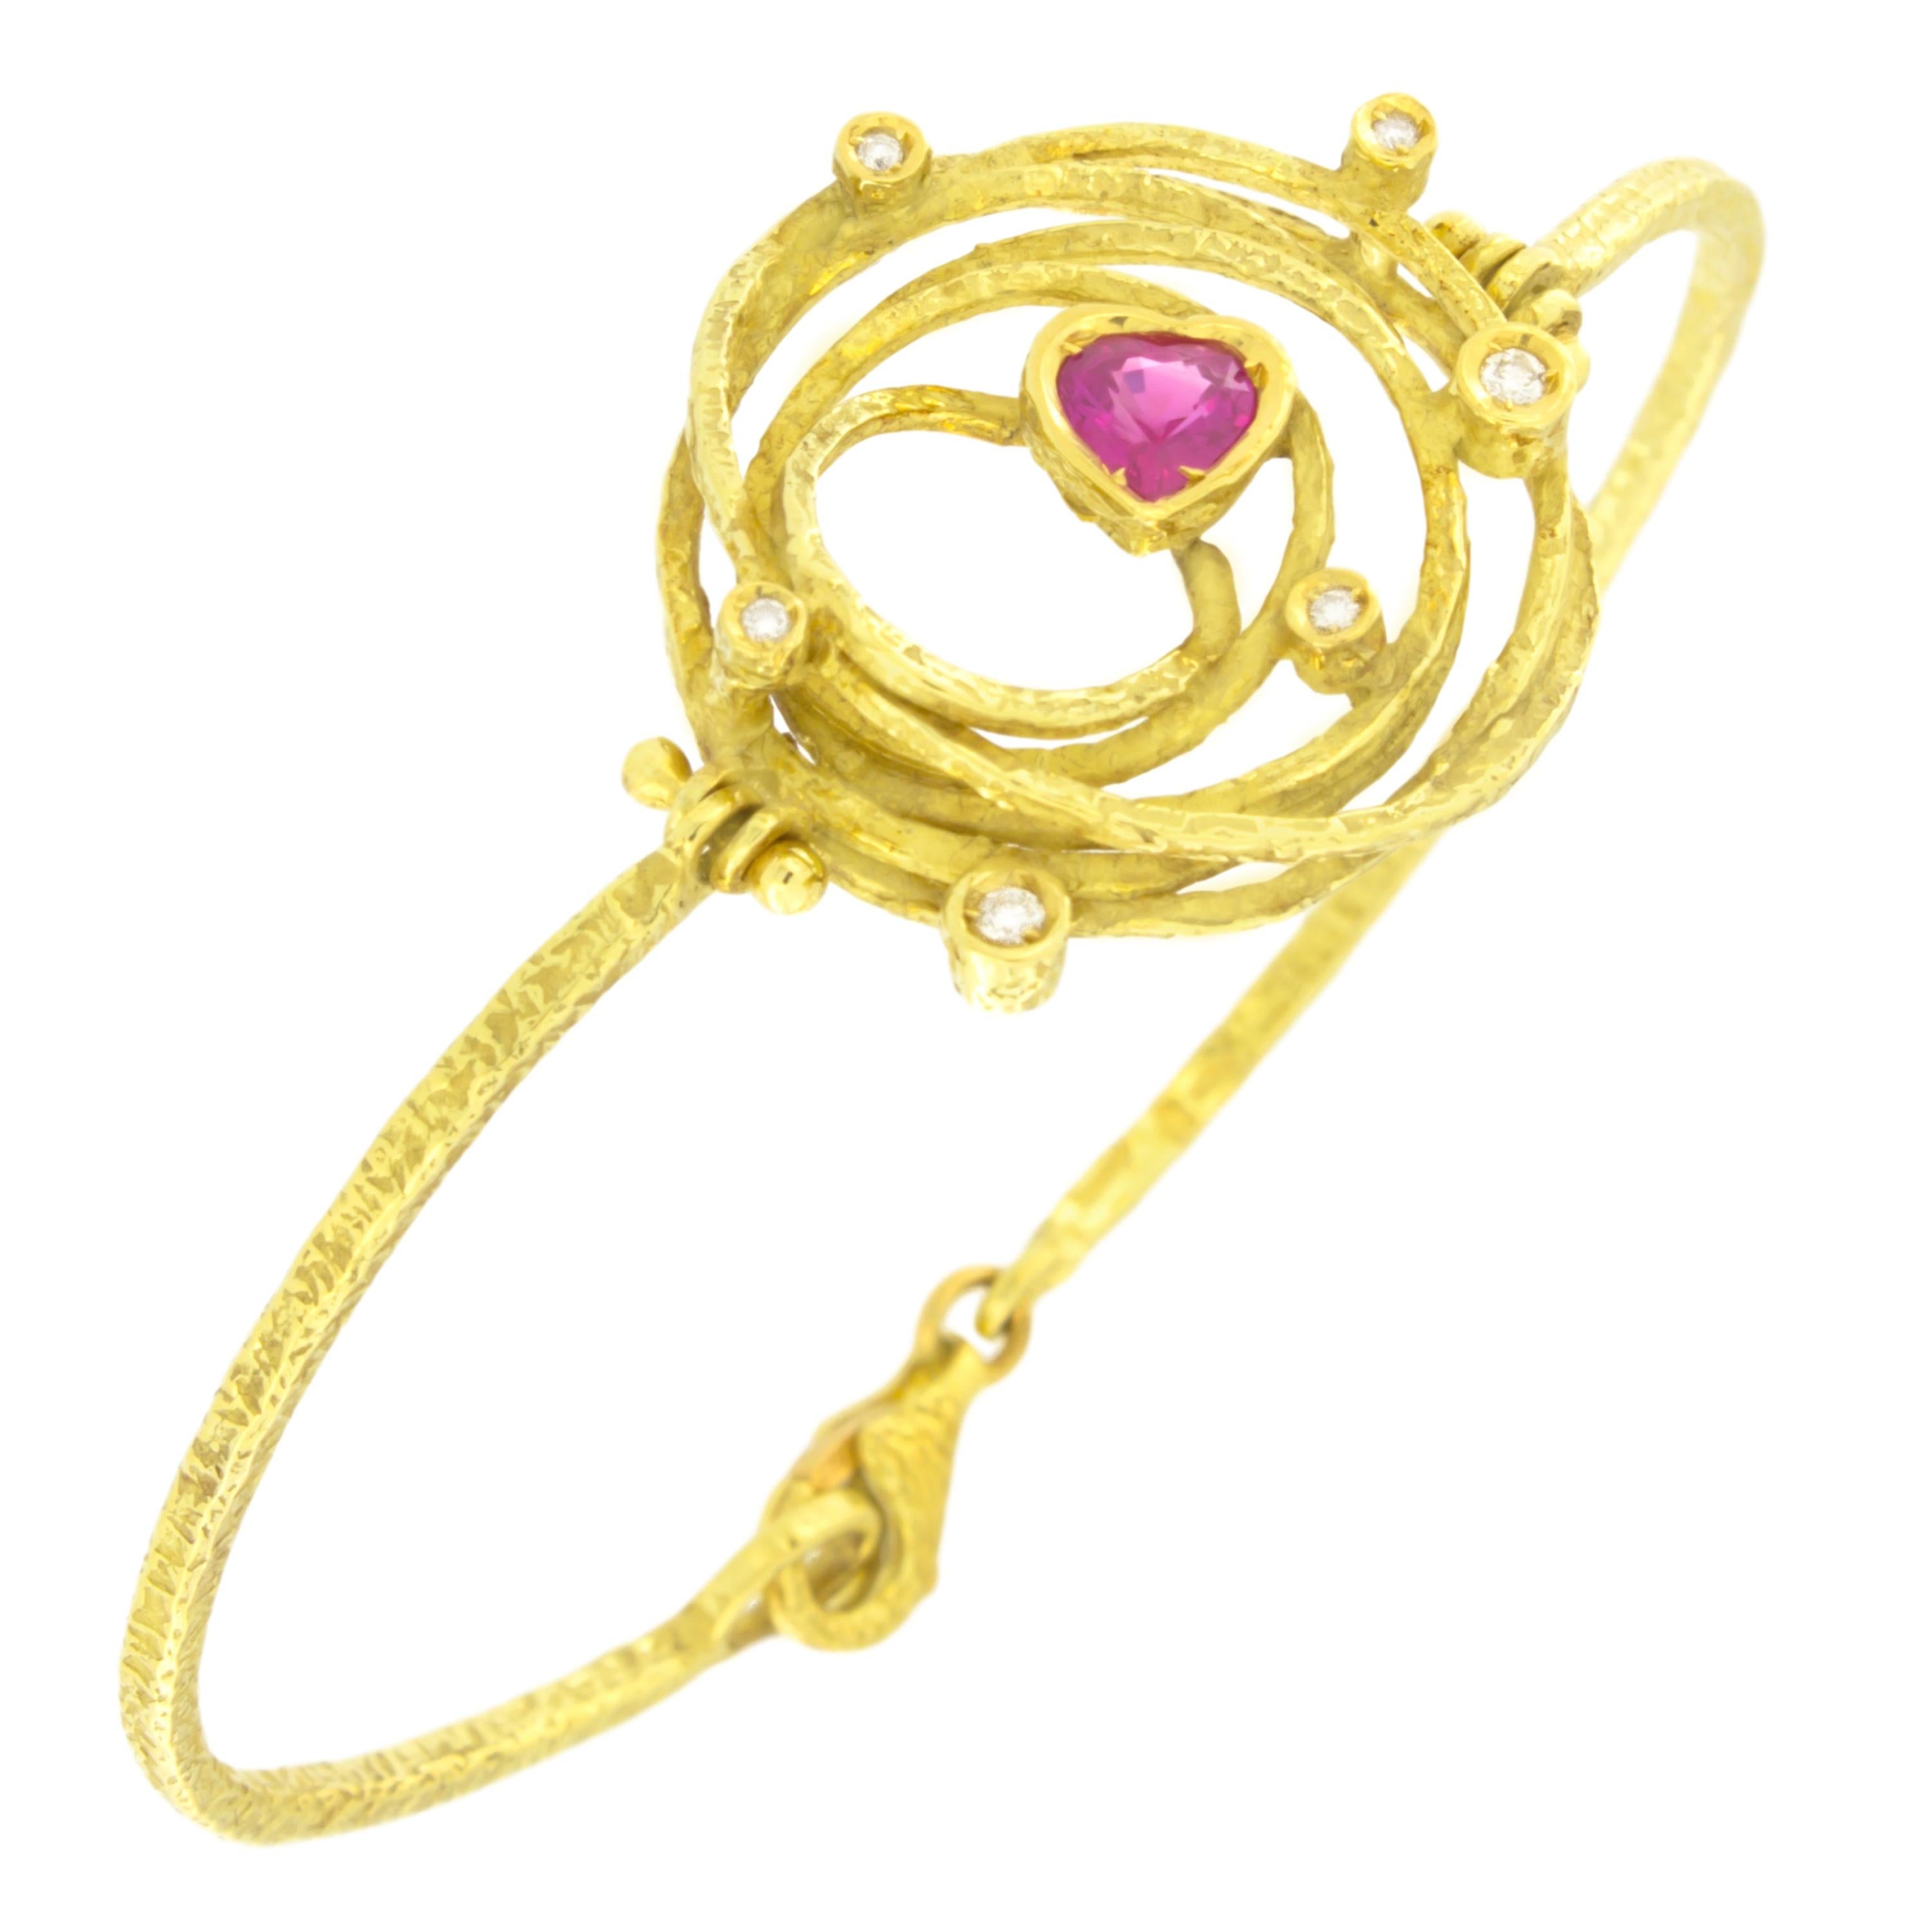 Bracelet moderne en or jaune 18 carats avec cœur de Sacchi, rubis, diamants et pierres précieuses